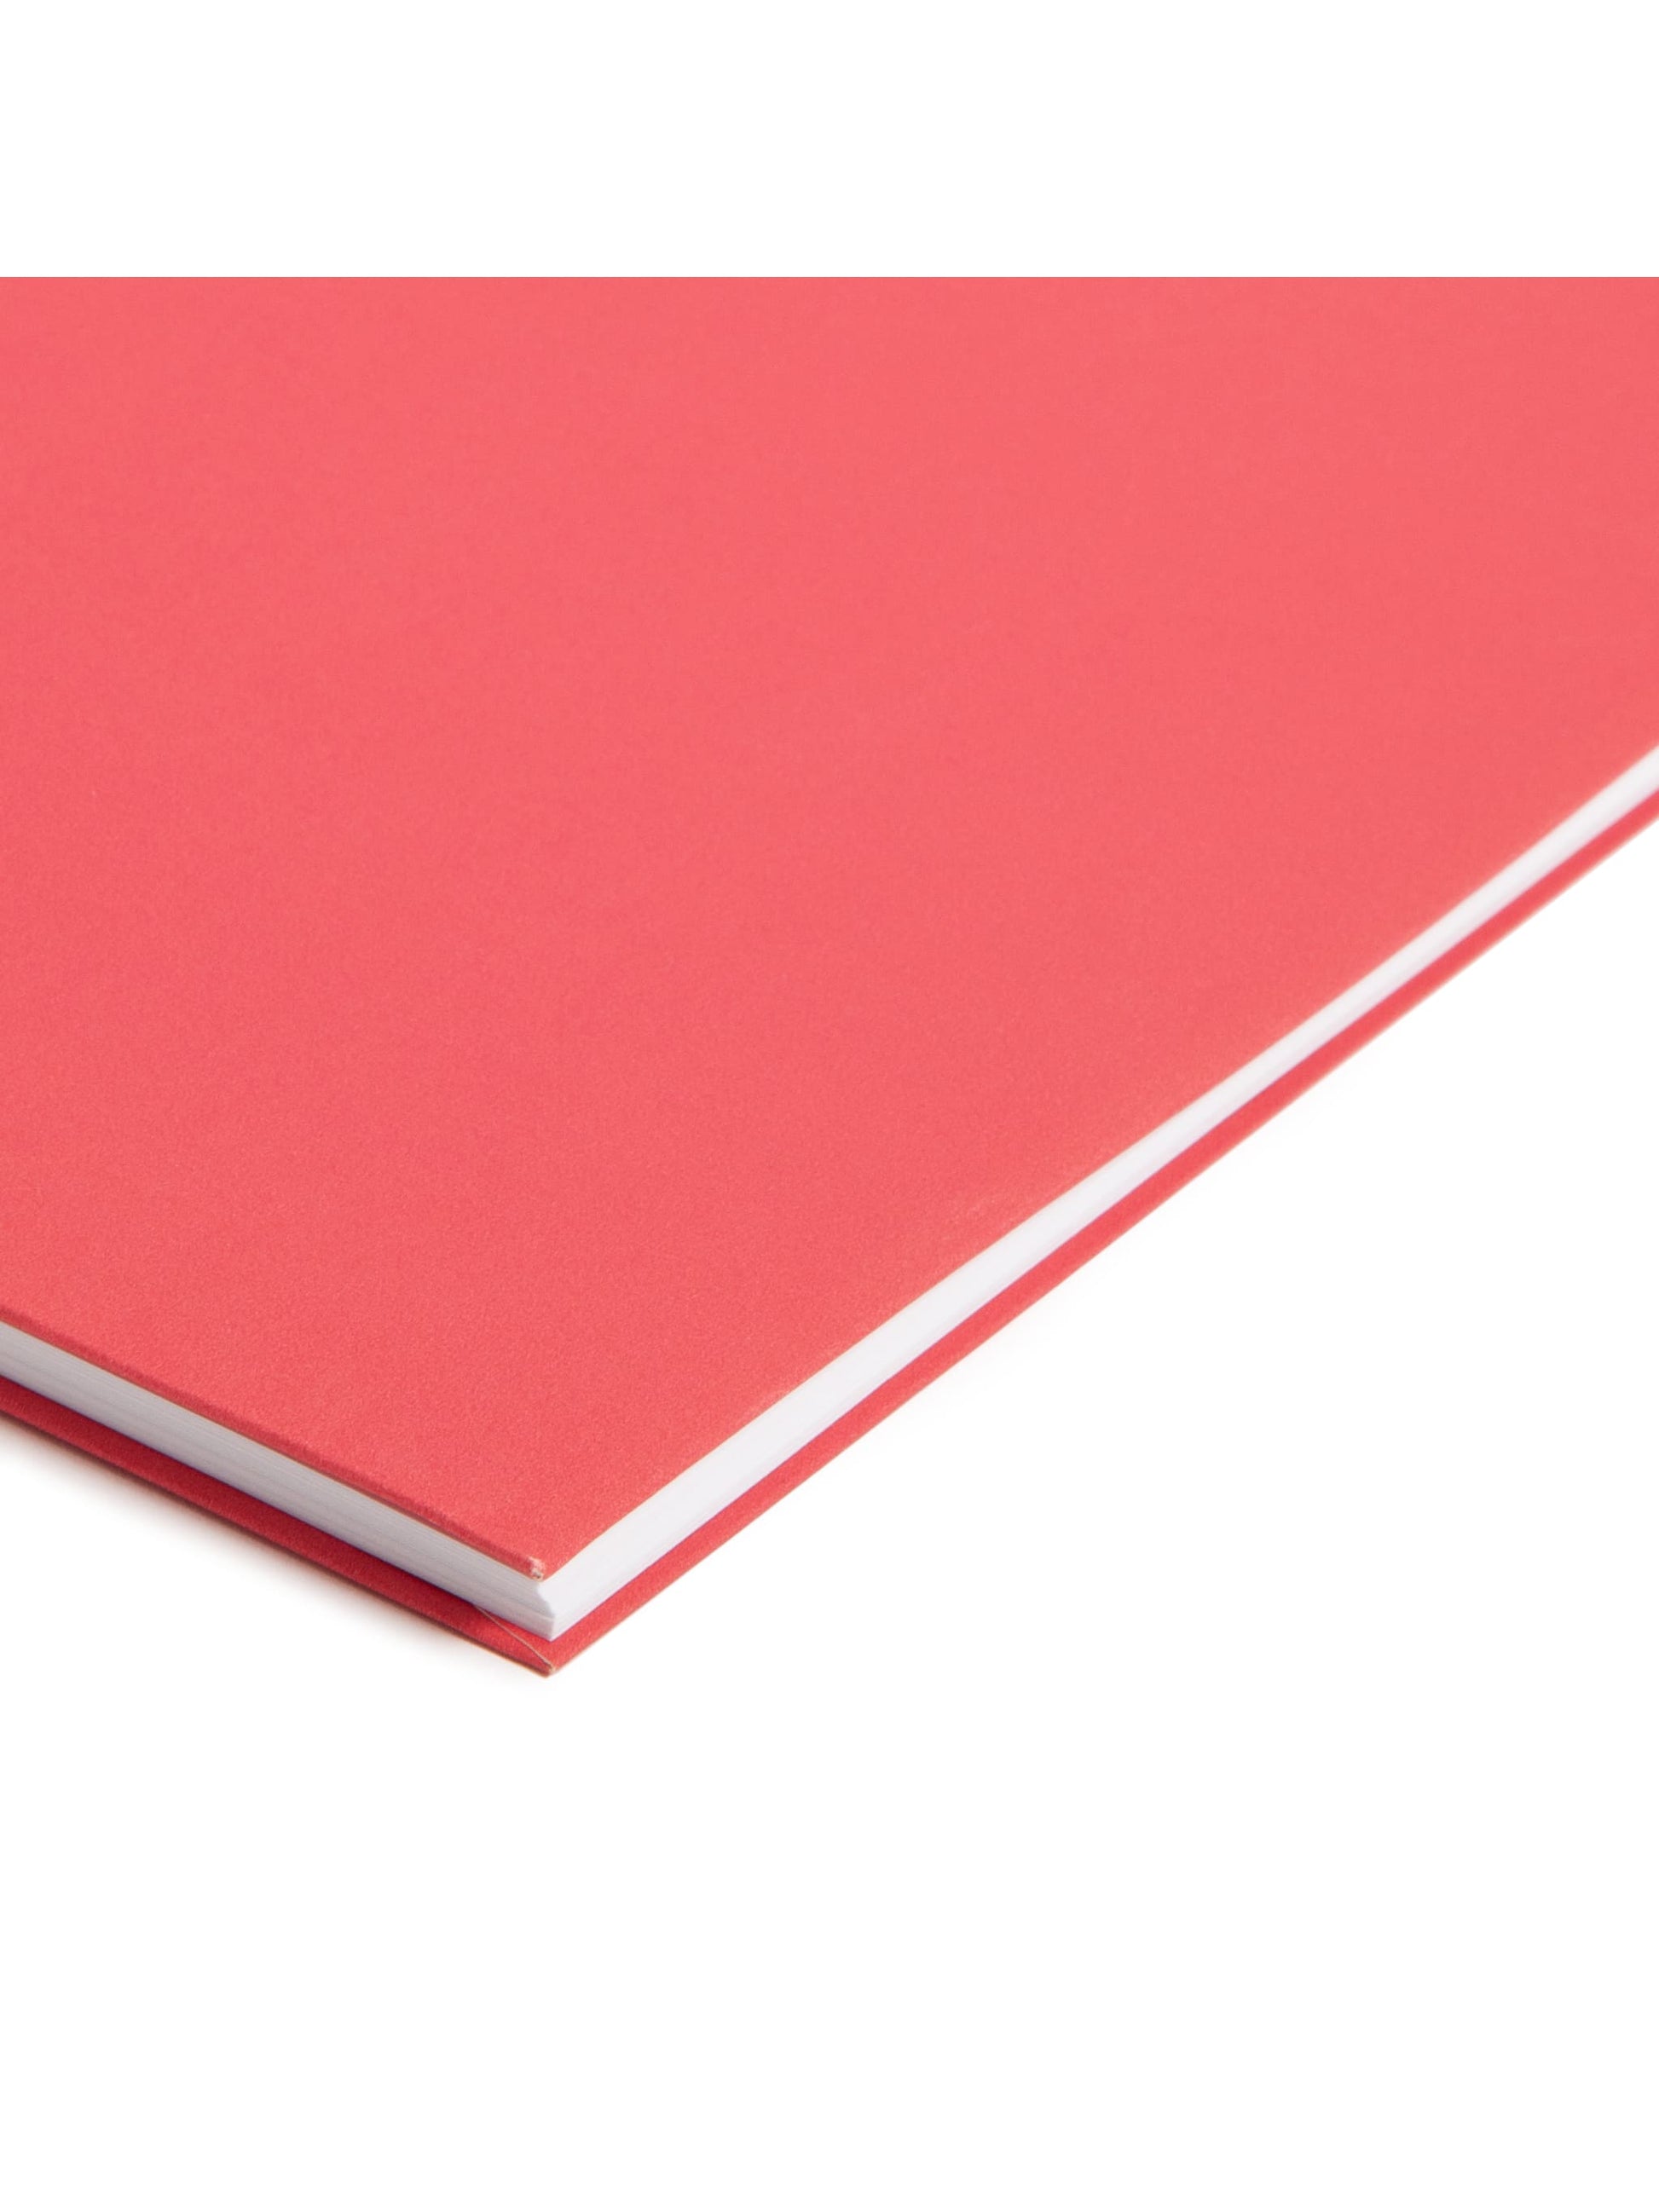 Standard Two-Pocket Folders, Set of 6, Assorted Brights Color, Letter Size, Set of 1,